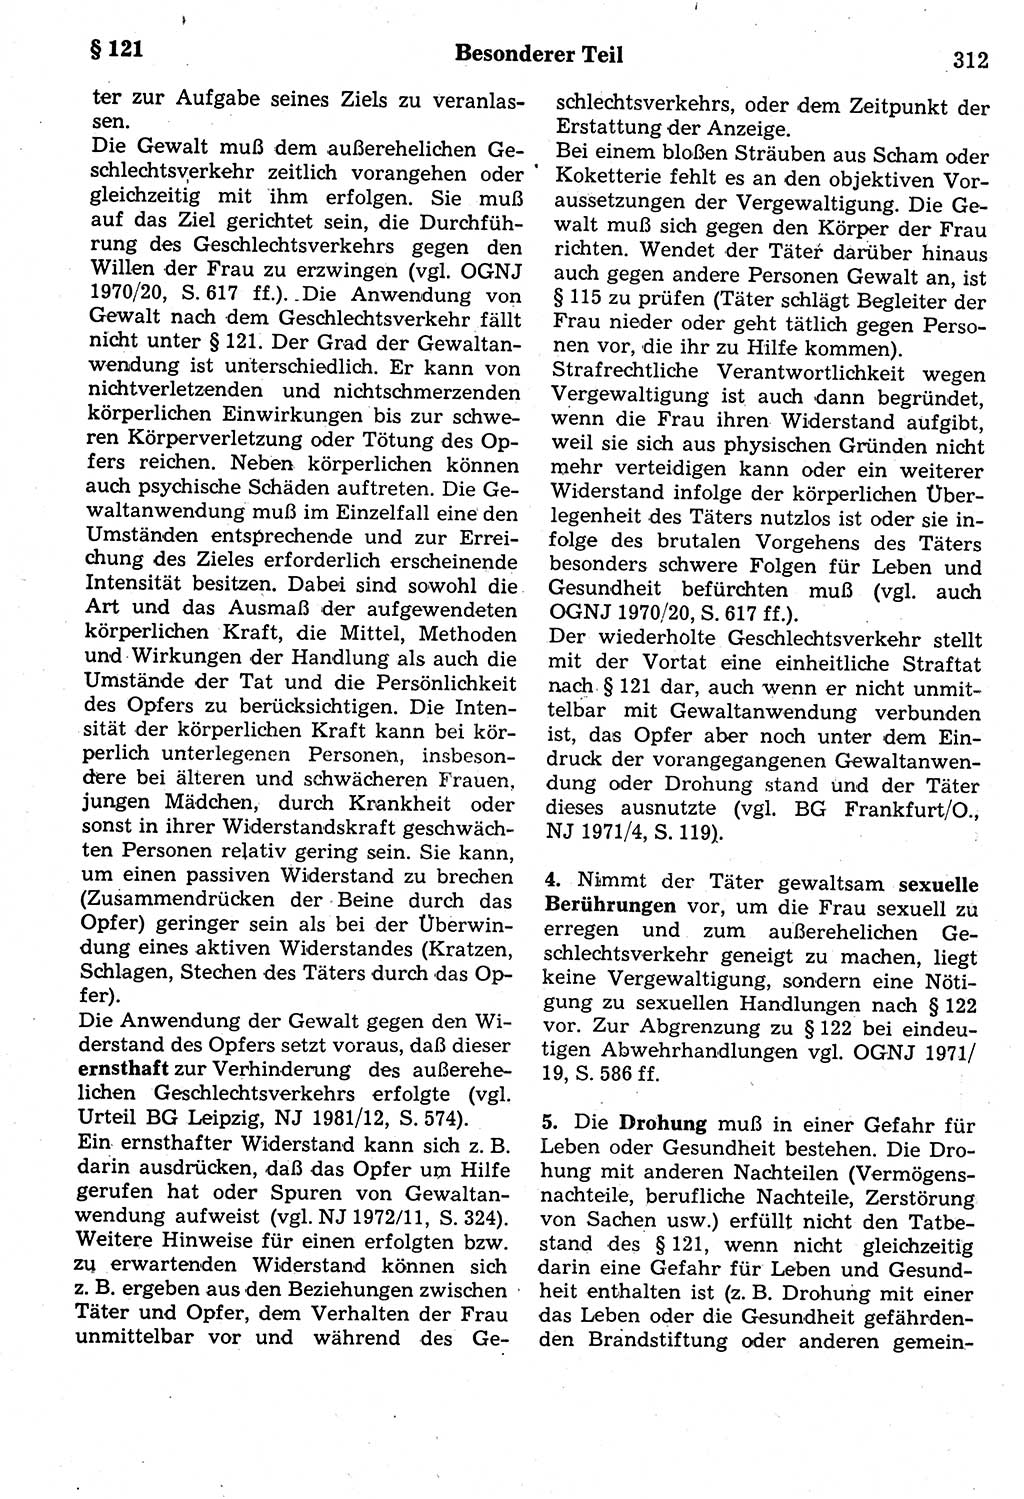 Strafrecht der Deutschen Demokratischen Republik (DDR), Kommentar zum Strafgesetzbuch (StGB) 1987, Seite 312 (Strafr. DDR Komm. StGB 1987, S. 312)